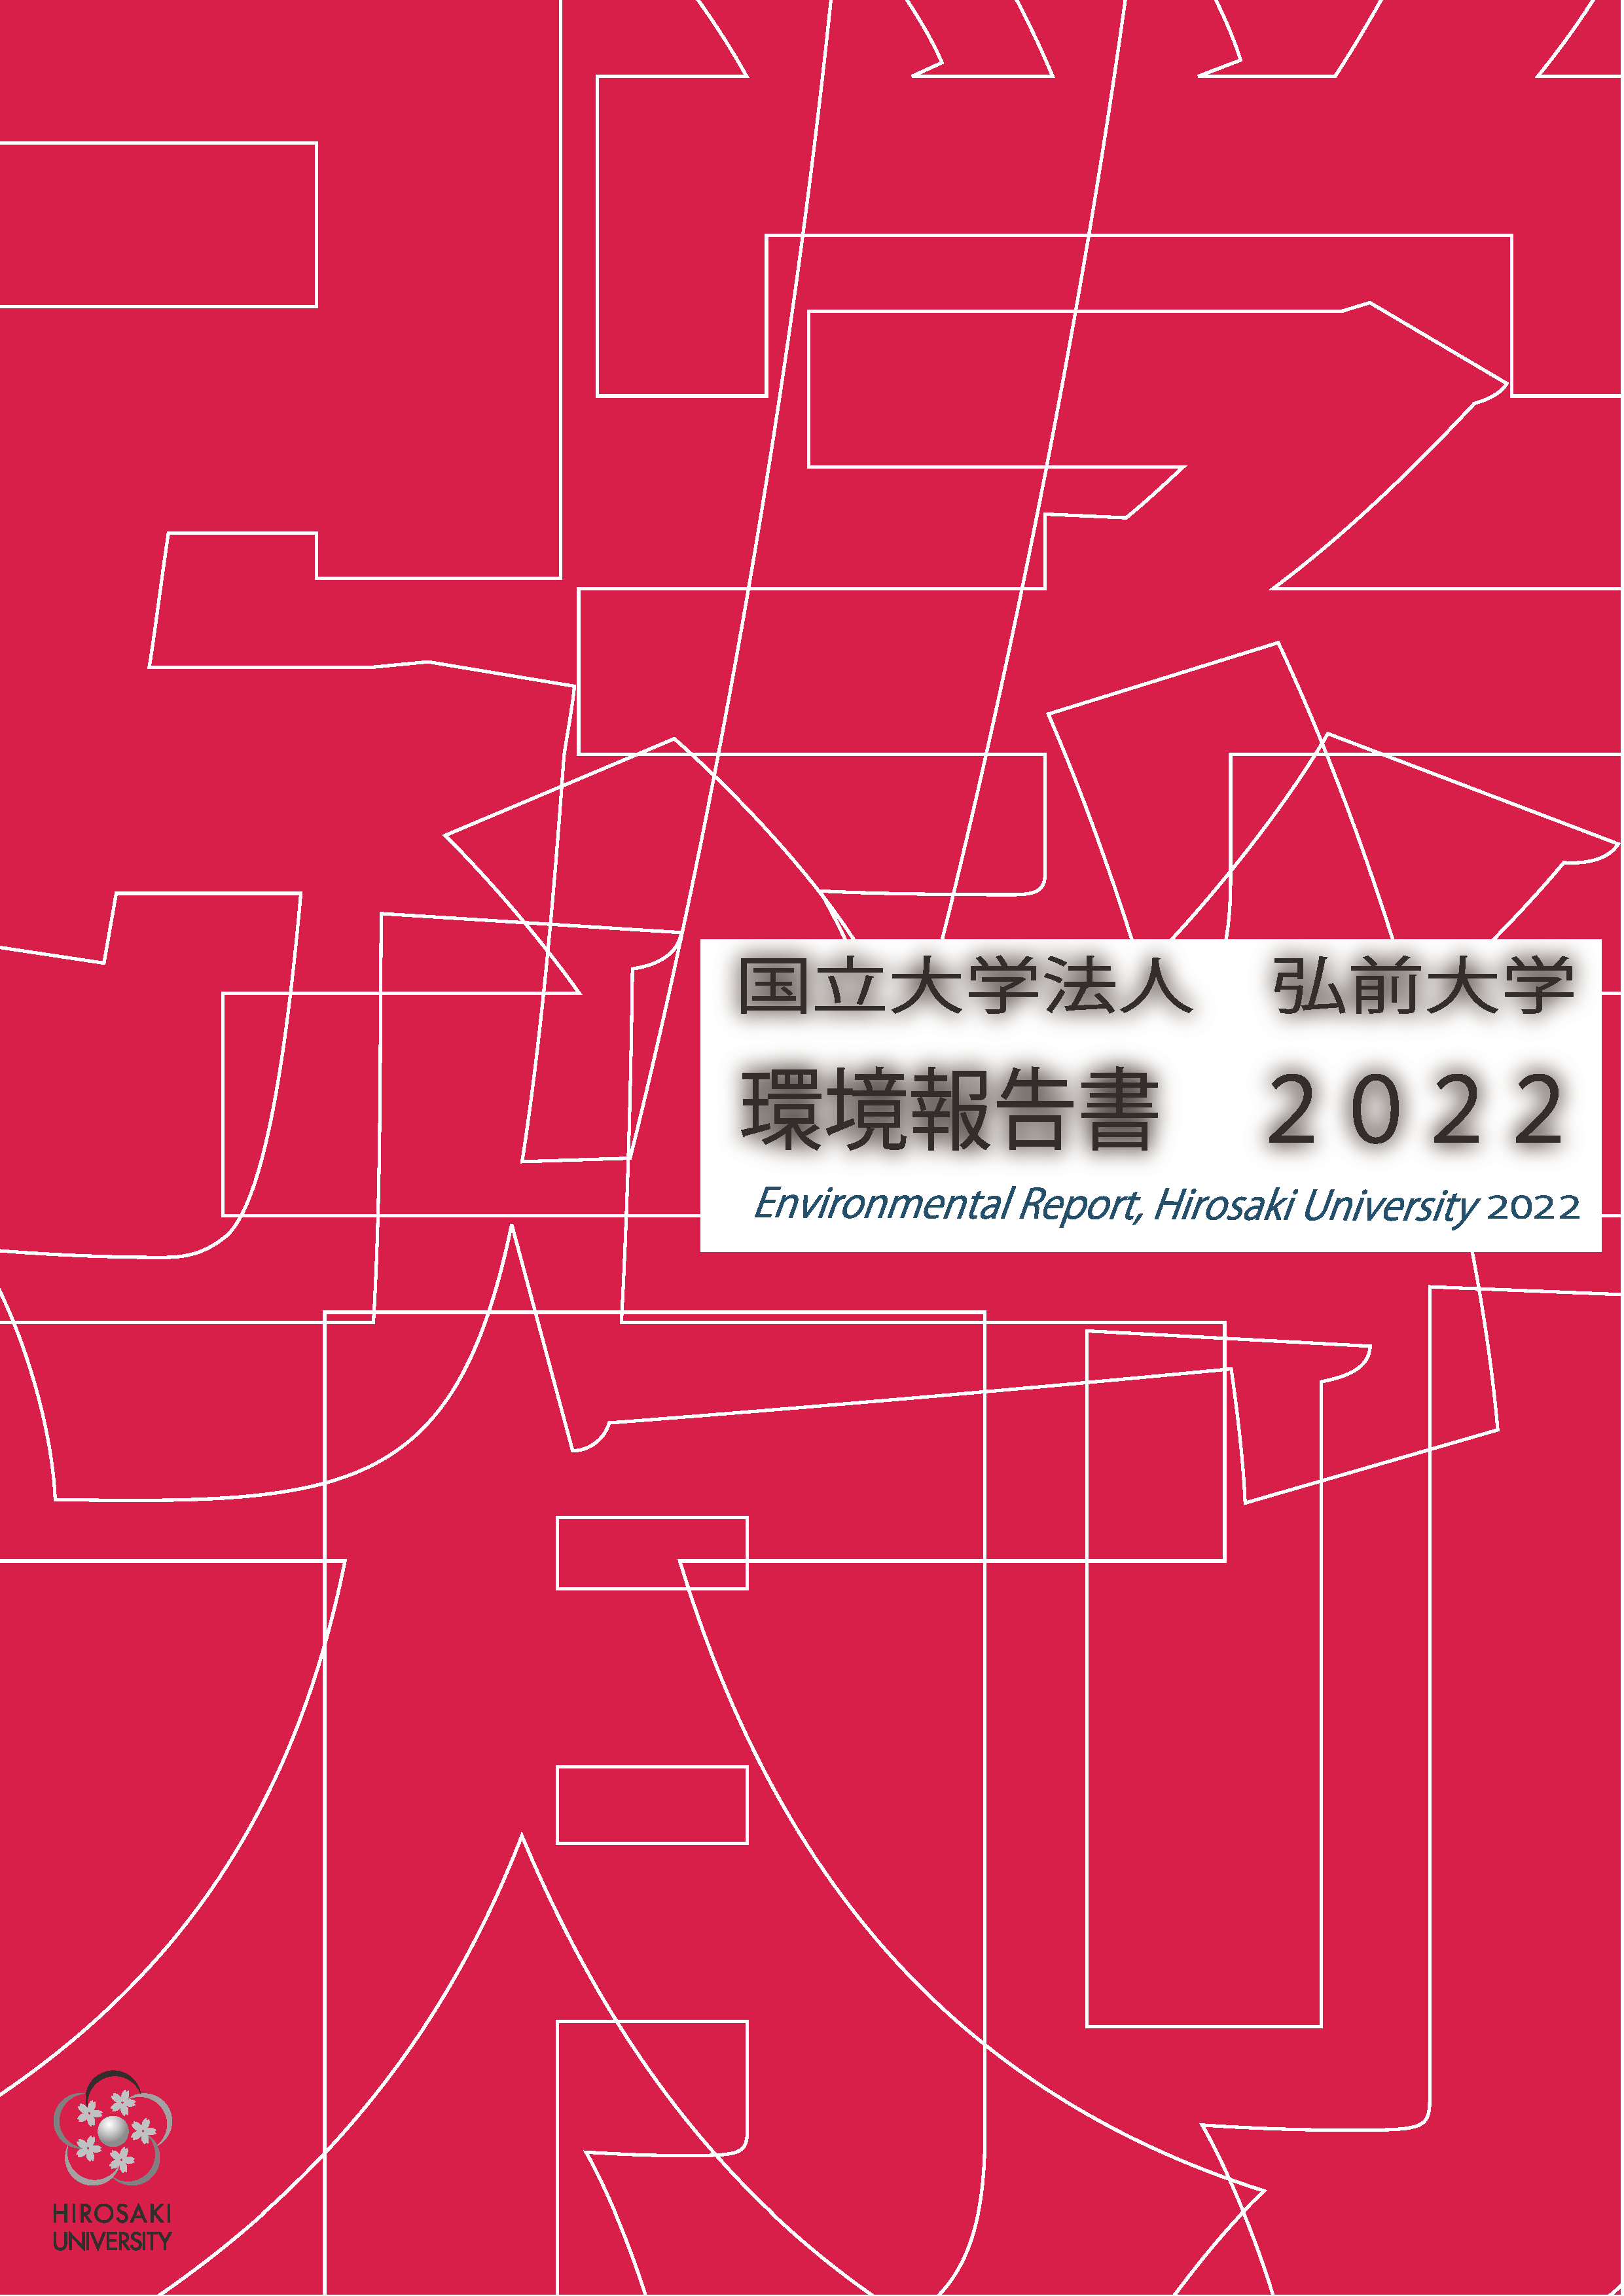 弘前大学環境報告書2022